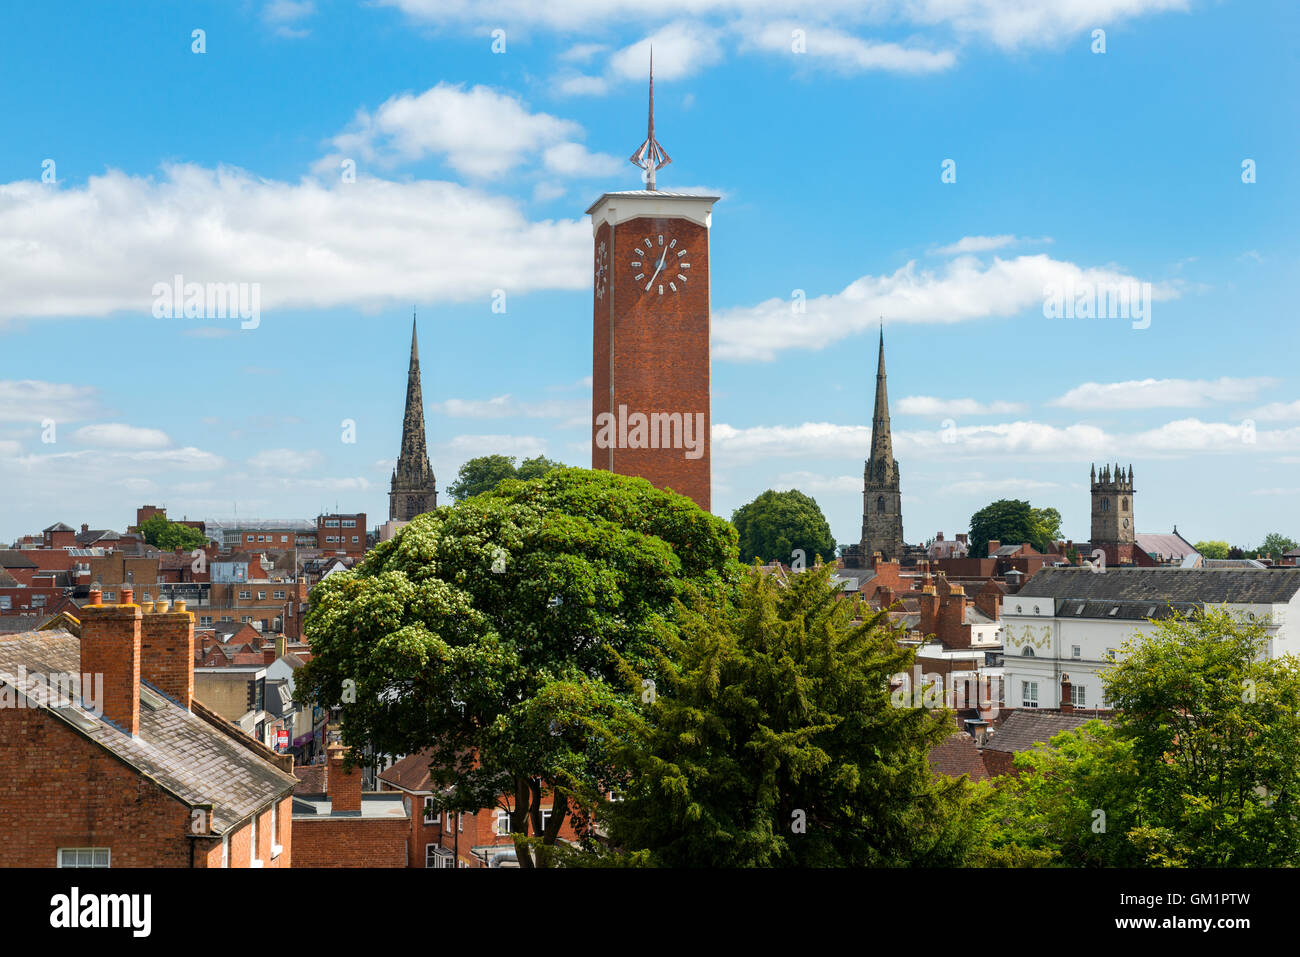 Shrewsbury Market Hall et églises vu depuis le toit de St Chad's nef, Shropshire. Banque D'Images